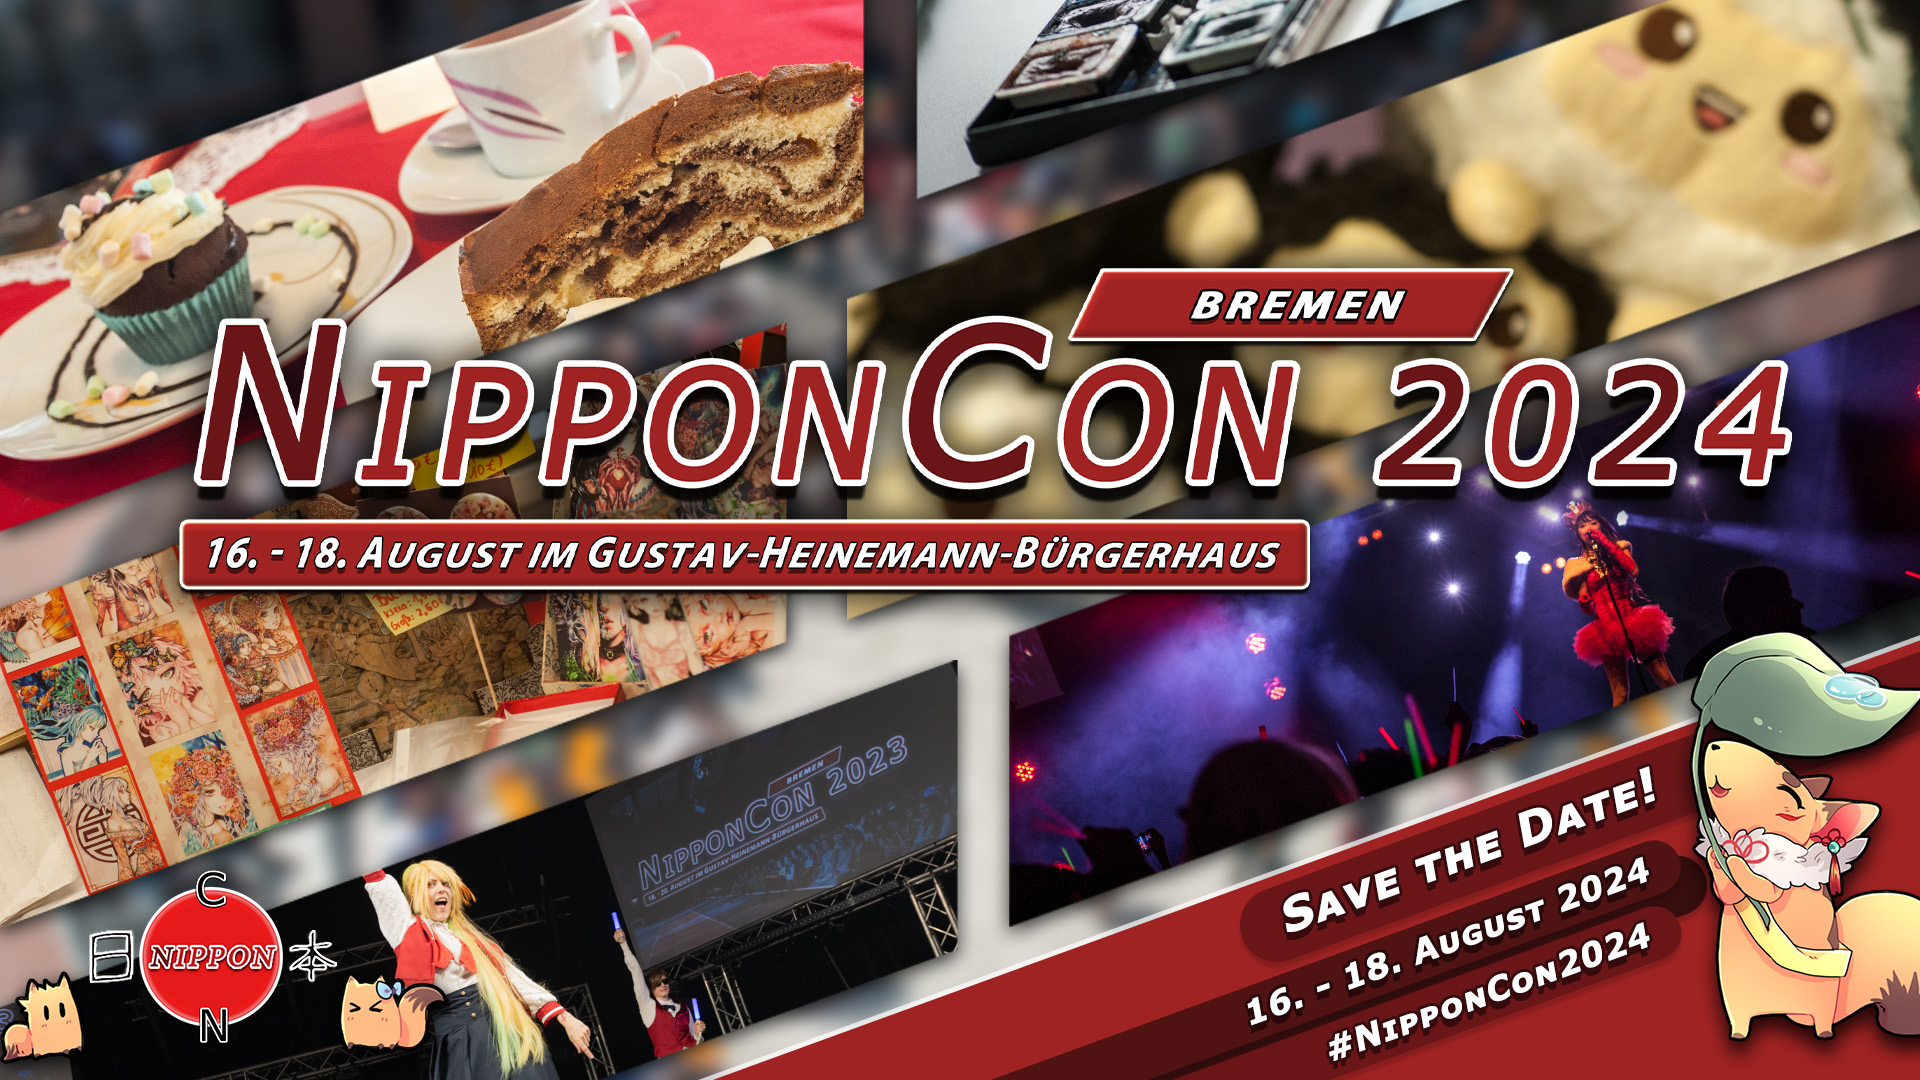 NipponCon 2024 Bremen. Vom 16. bis 18 August im Gustav-Heinemann-Bürgerhaus. #NipponCon2024. Im Hintergrund sind einige Bilder vergangener Ausgaben der NipponCon zu sehen.